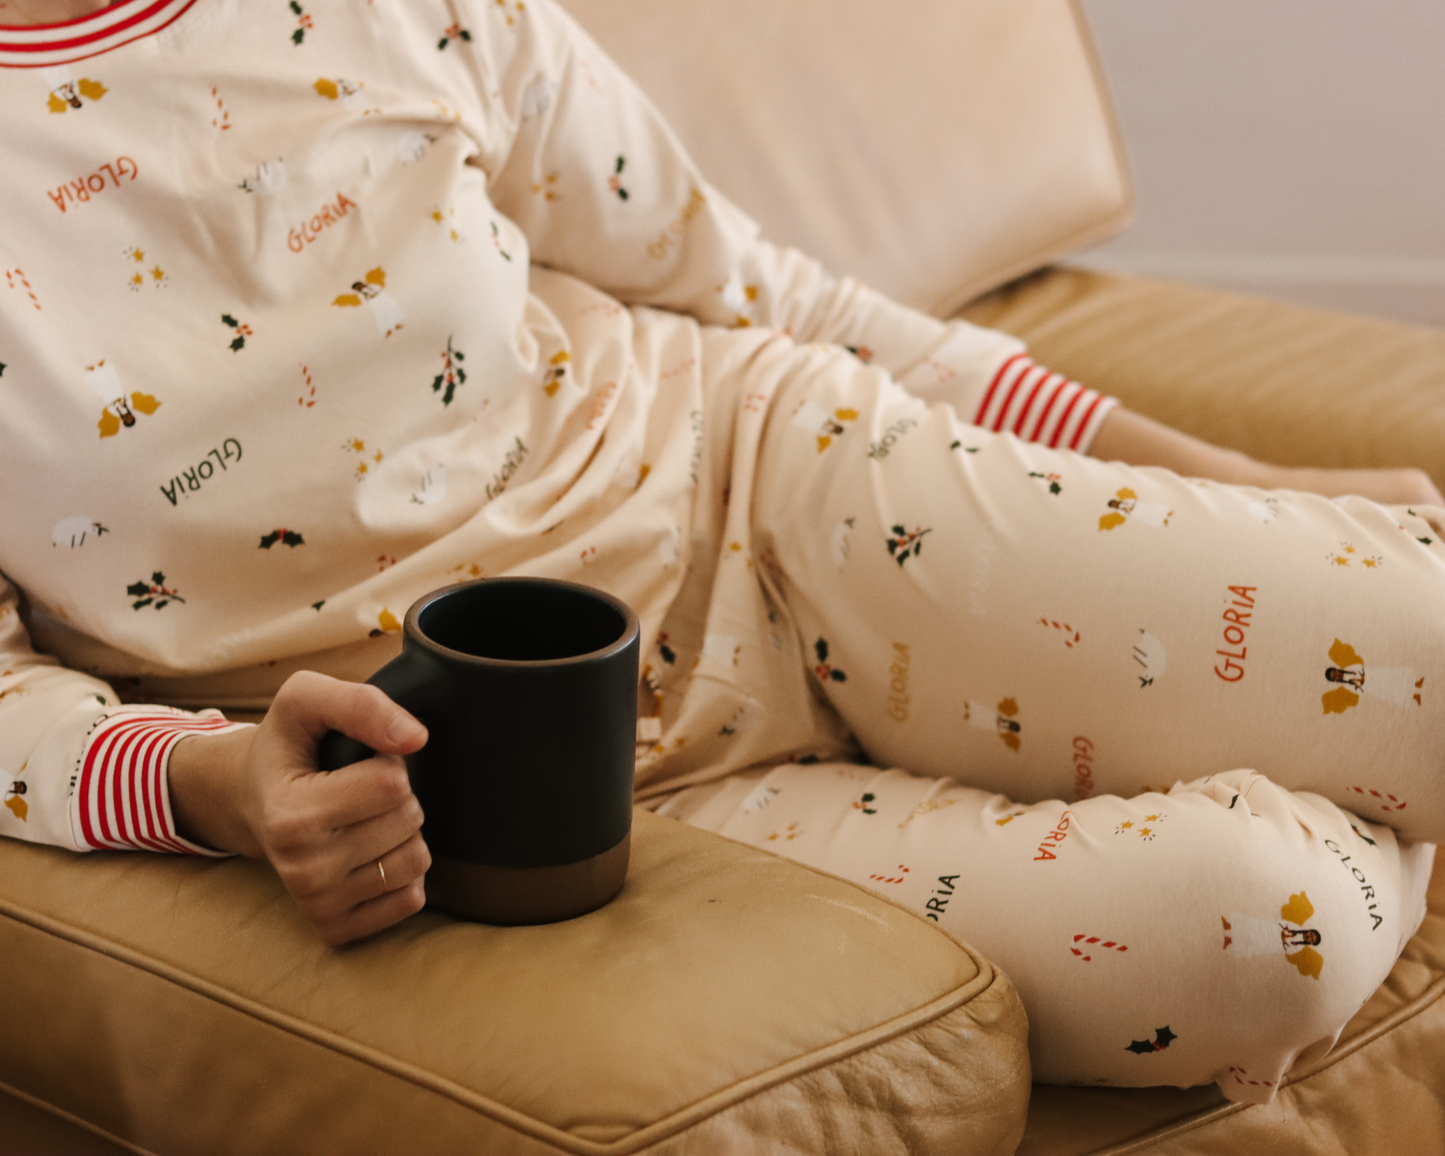 Women's Christmas Pajama Jogger Pants